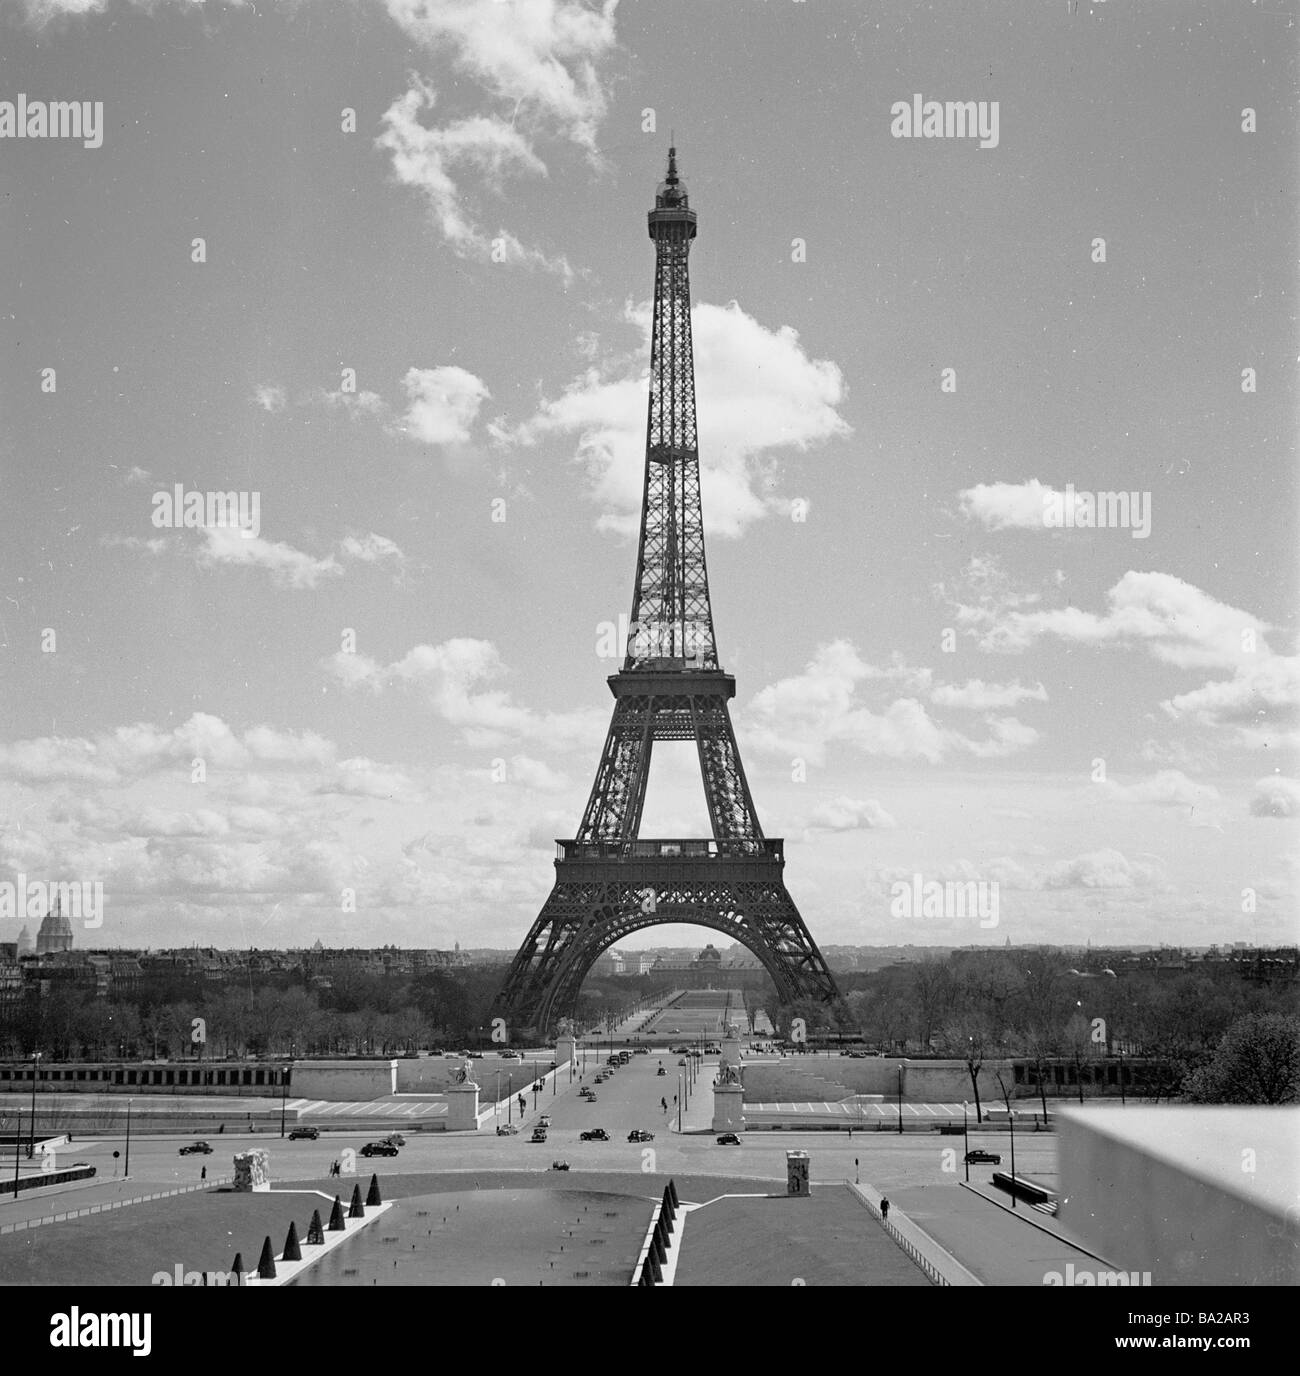 1950s, la Torre Eiffel ionica, una torre in ferro battuto, alta 300 metri, costruita nel 1889 a Champ de Mars, Parigi, Francia per l'esposizione Universelle. Foto Stock